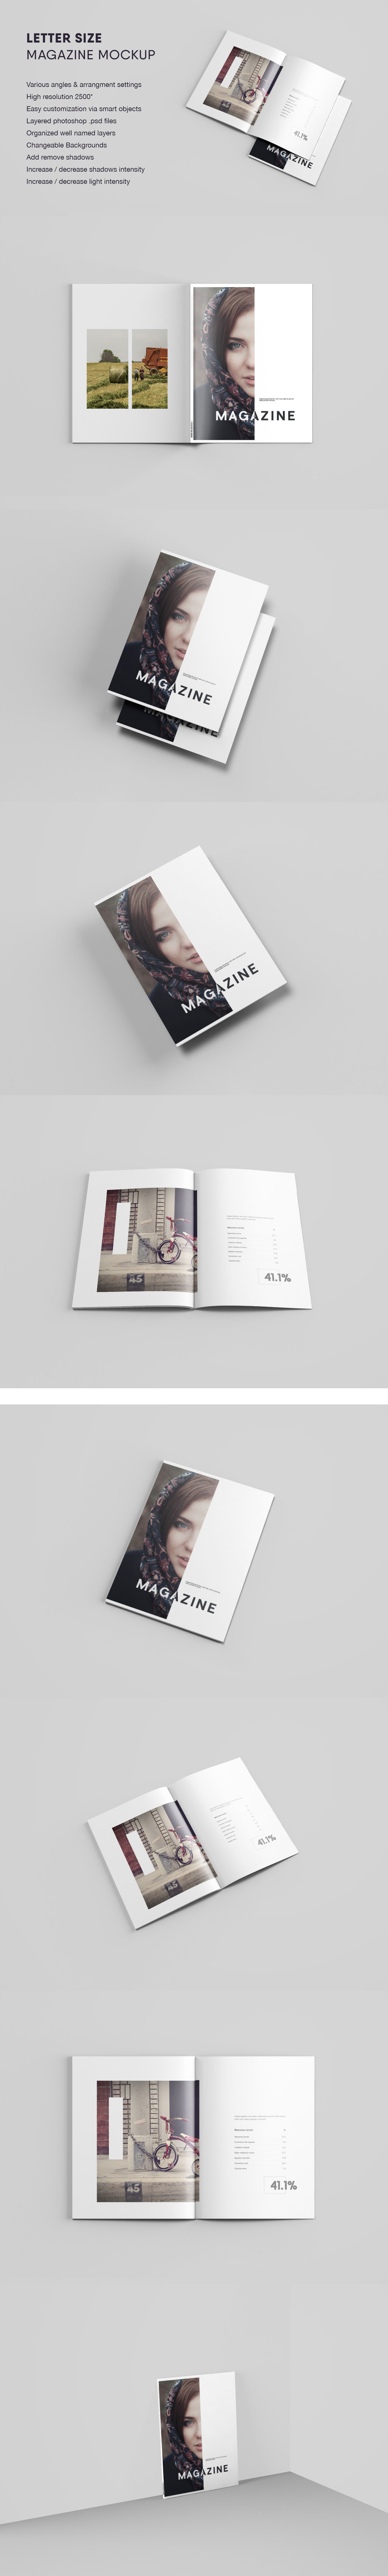 多角度的A4杂志&画册设计展示模型Mockups下载[PSD]-iamxka-com